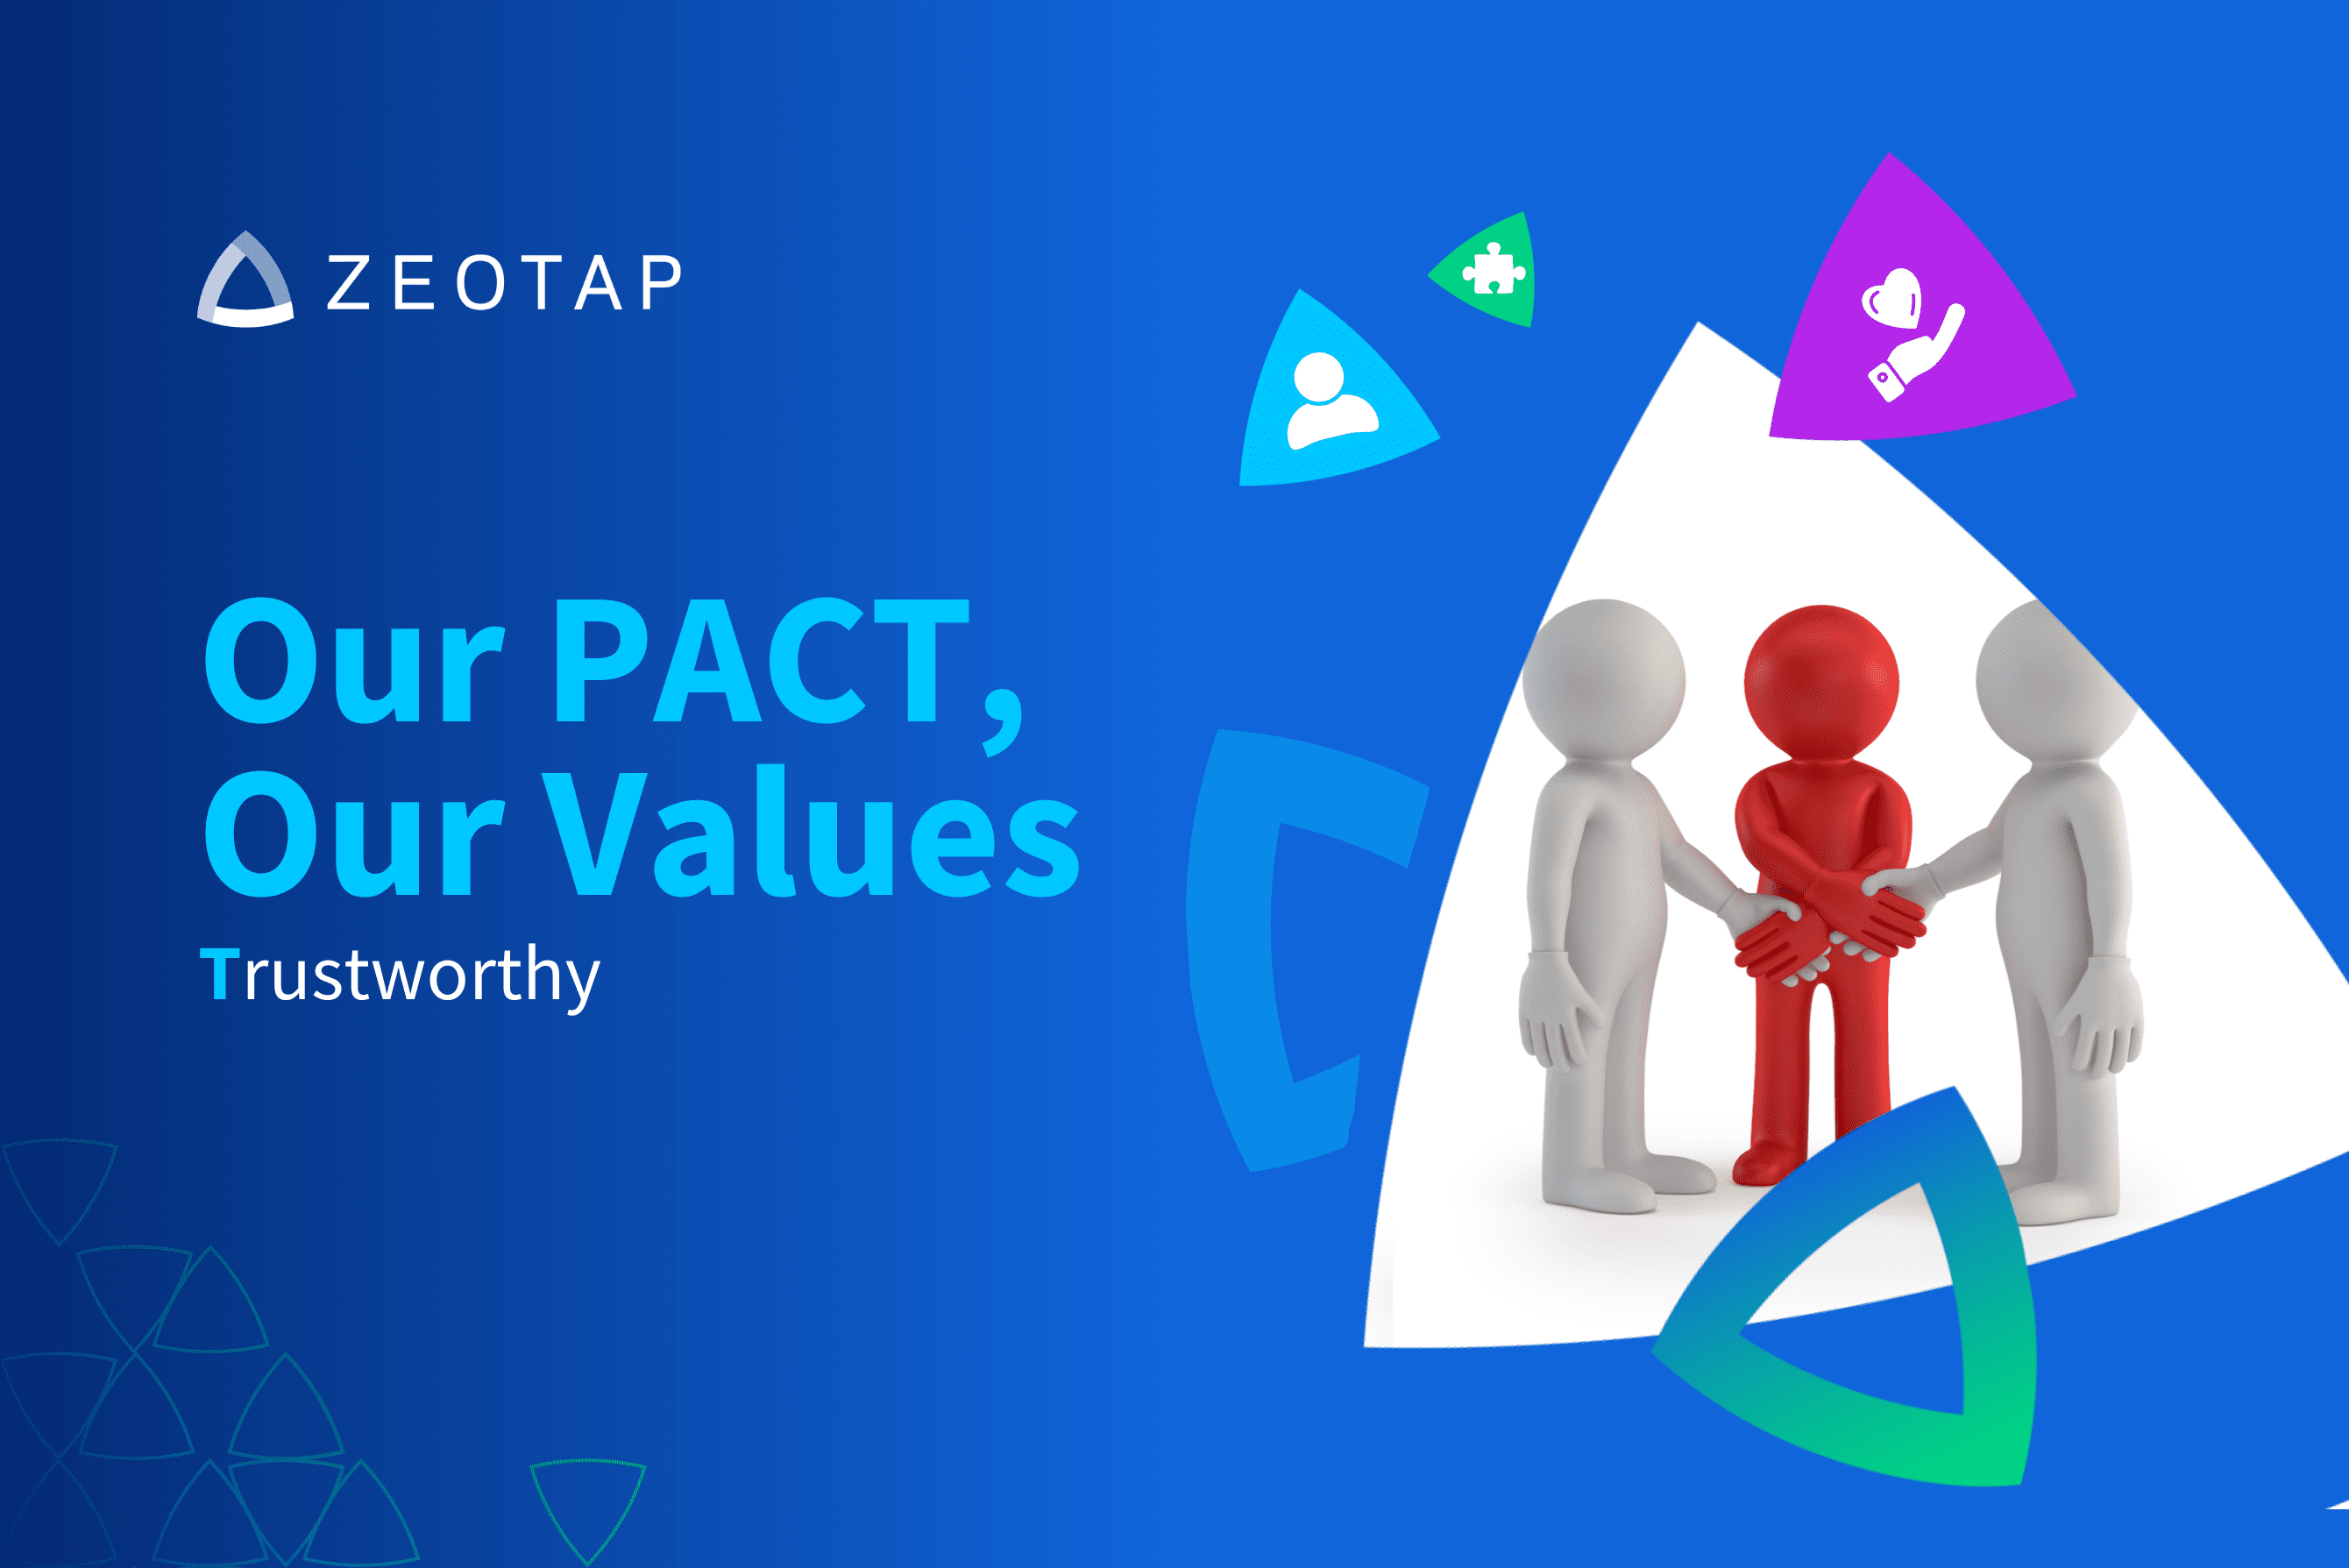 Zeotap value trustworthy